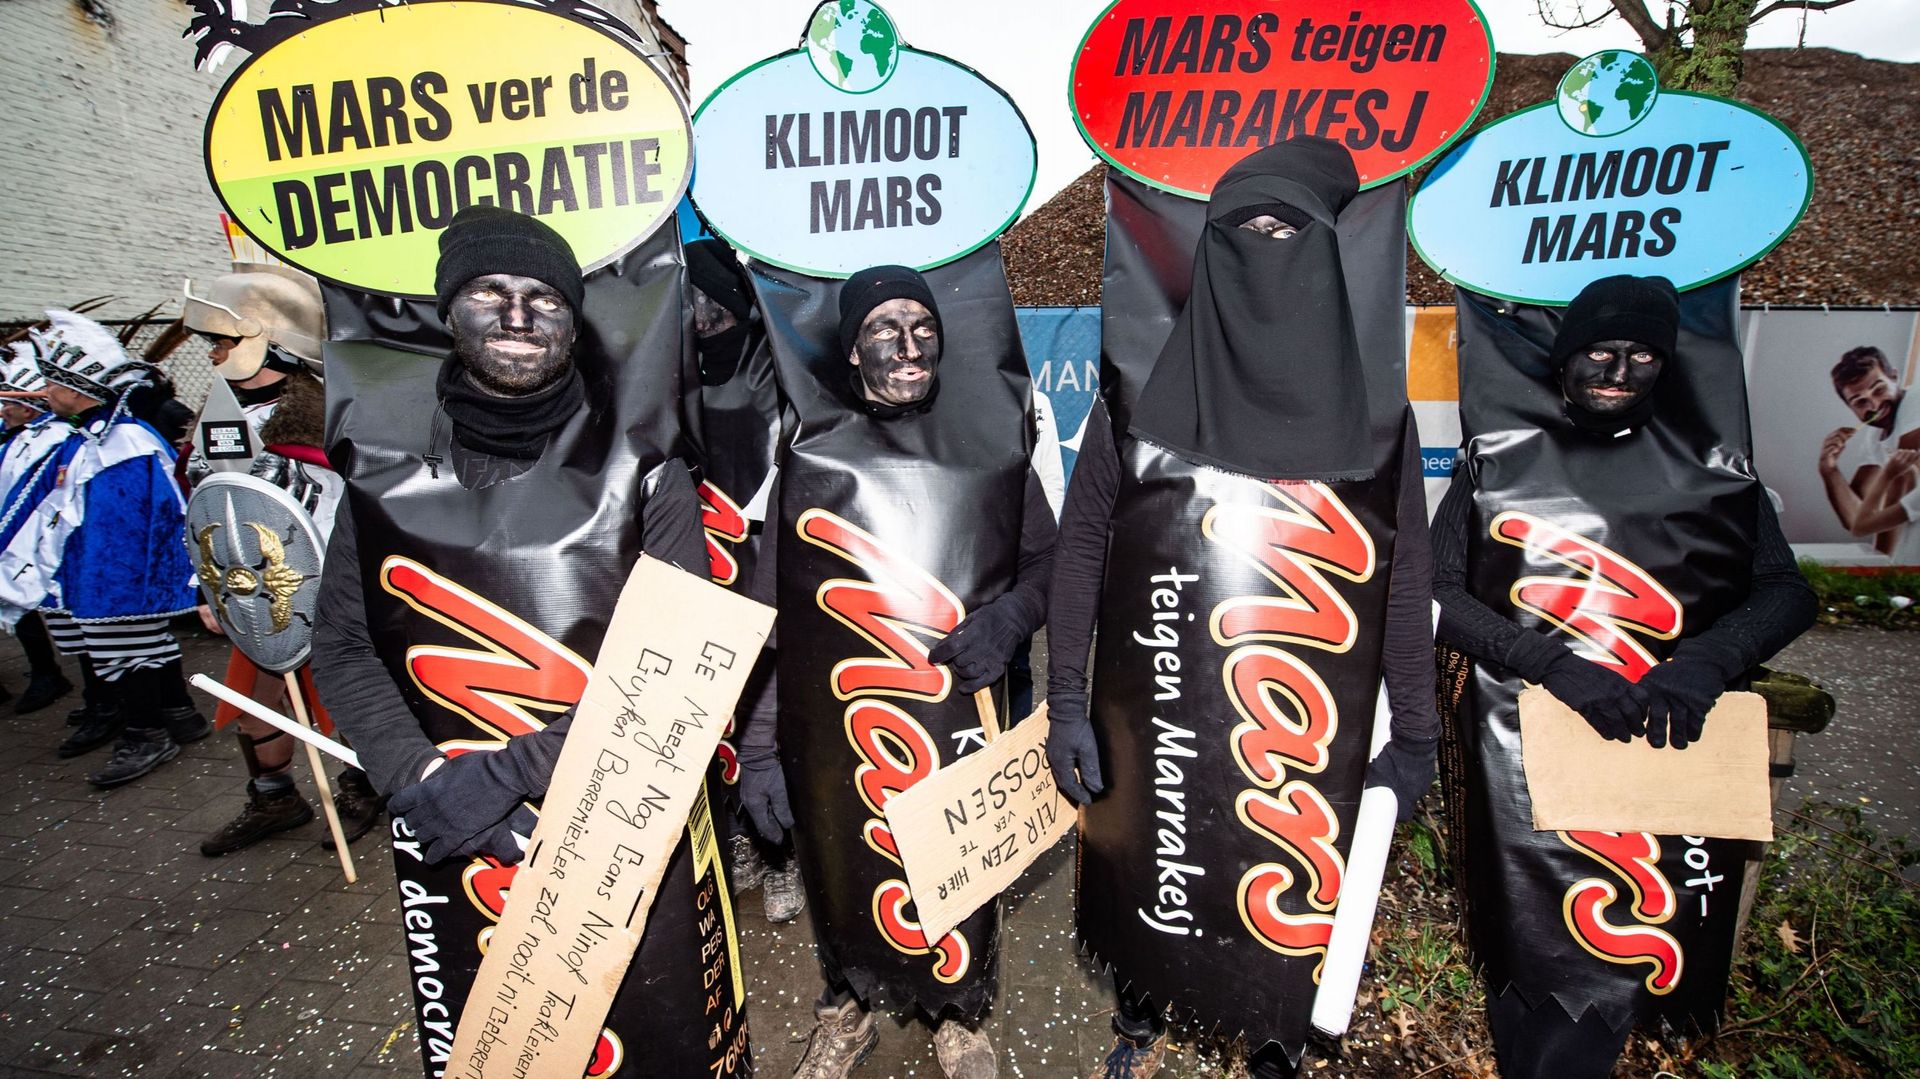 Joke Schauvliege, Anuna De Wever et la marche pour le climat brocardées au carnaval d'Alost